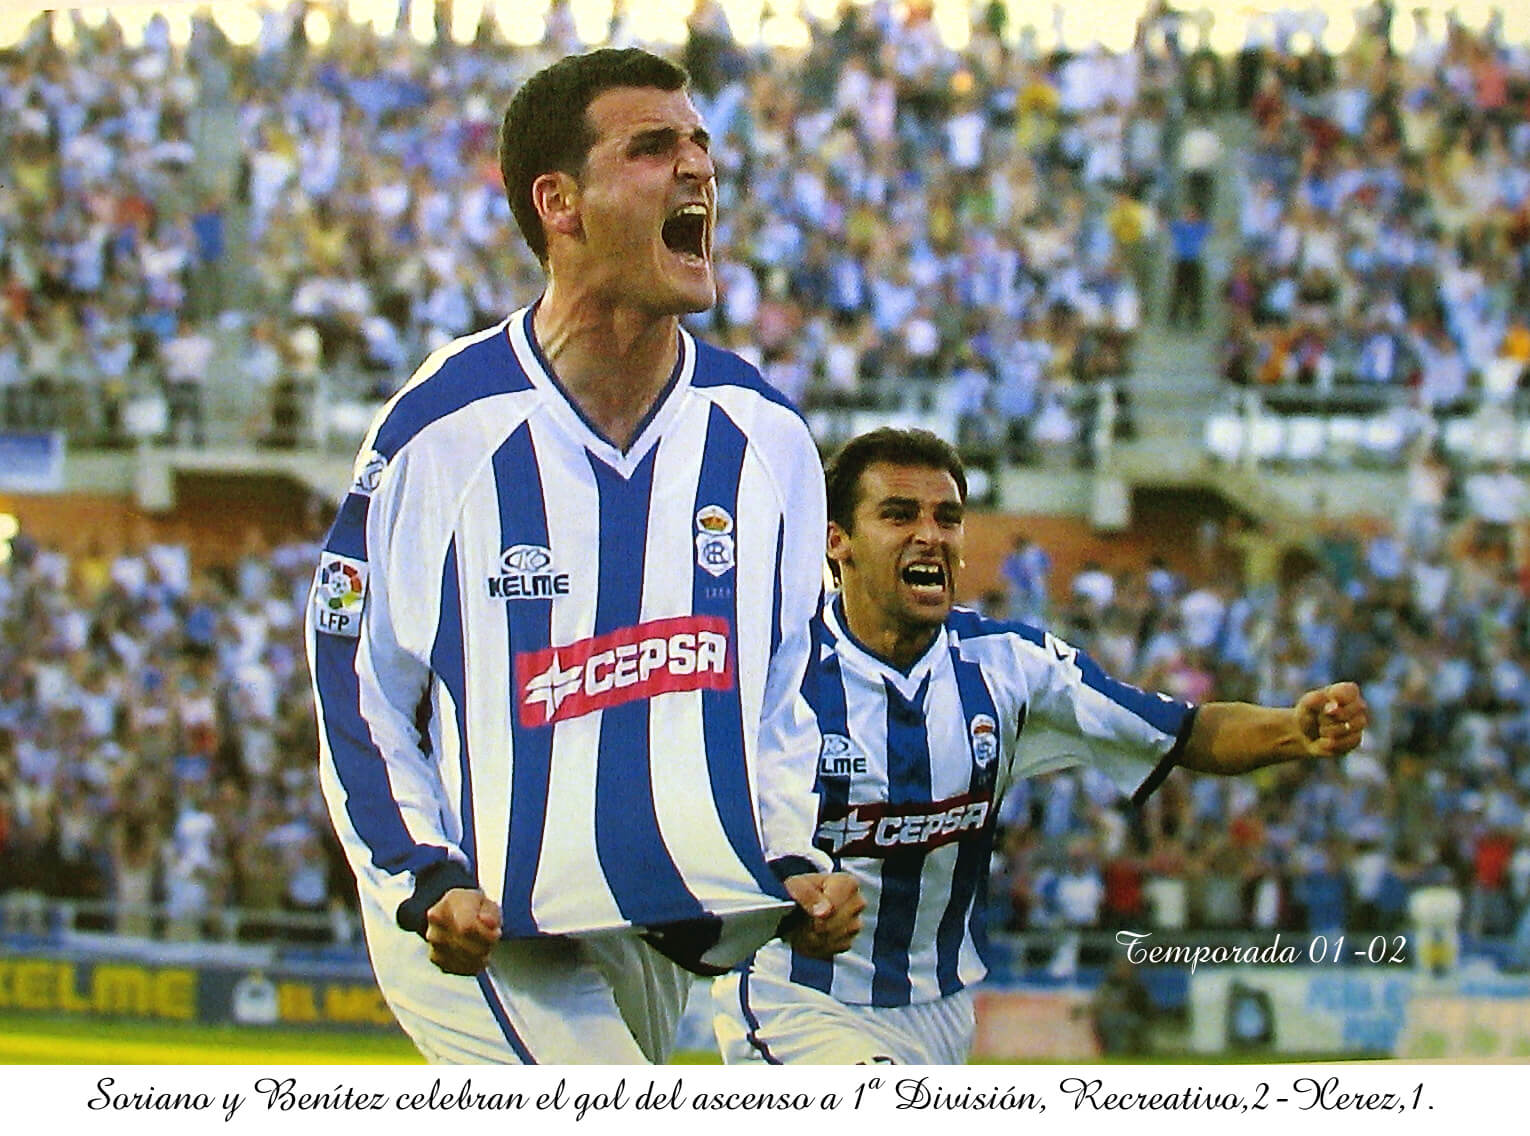 2002 Ascenso con gol de Soriano